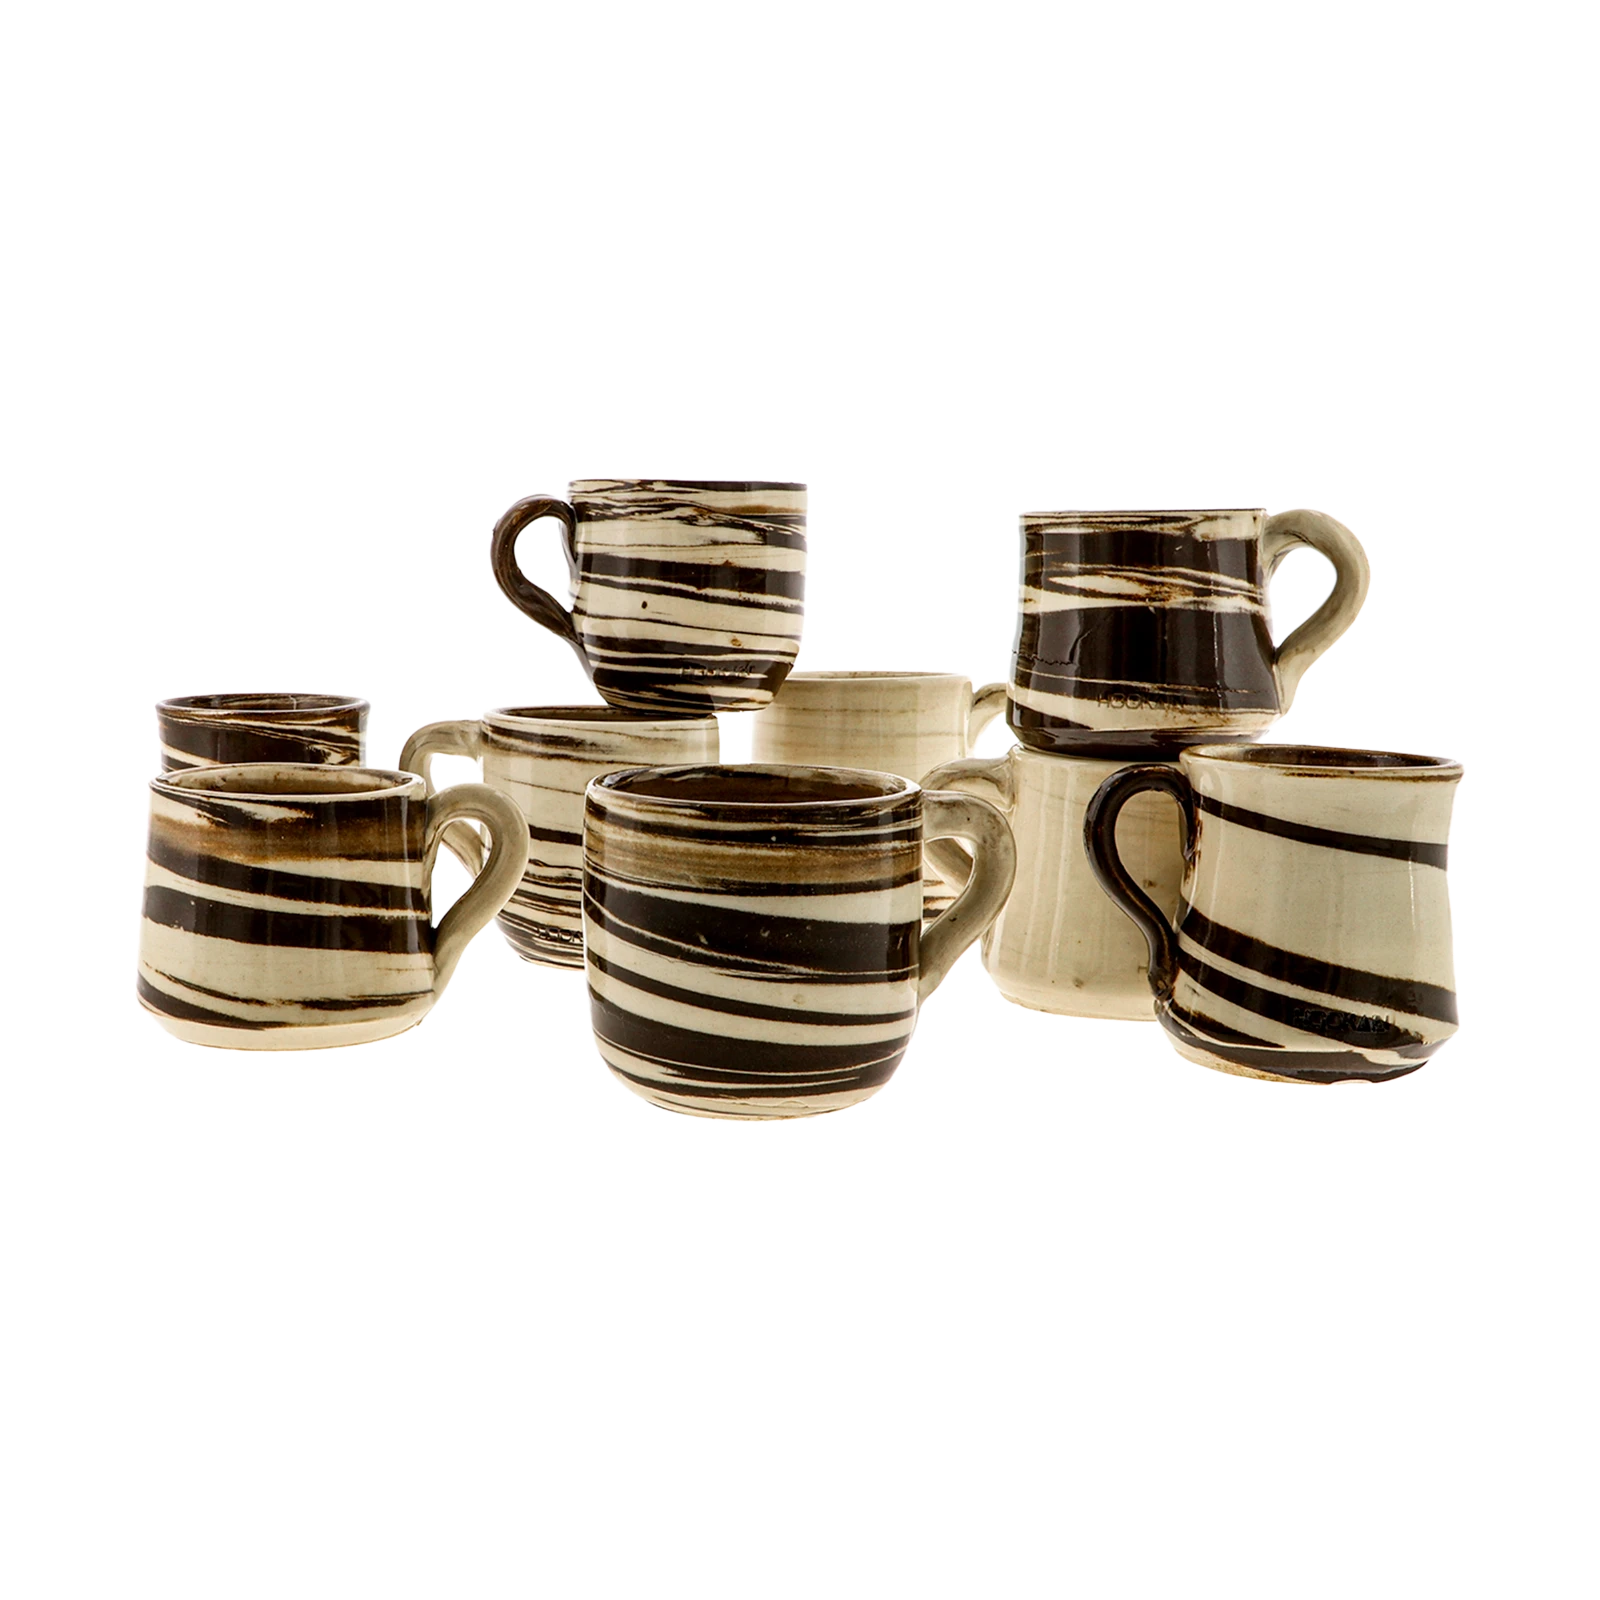 BRÜSTUCK STEINGUT - TASSE - MILKY TWIST - MIXED CLAY | Handgefertigte Keramik günstig kaufen - Hookain Shisha-Onlineshop-4